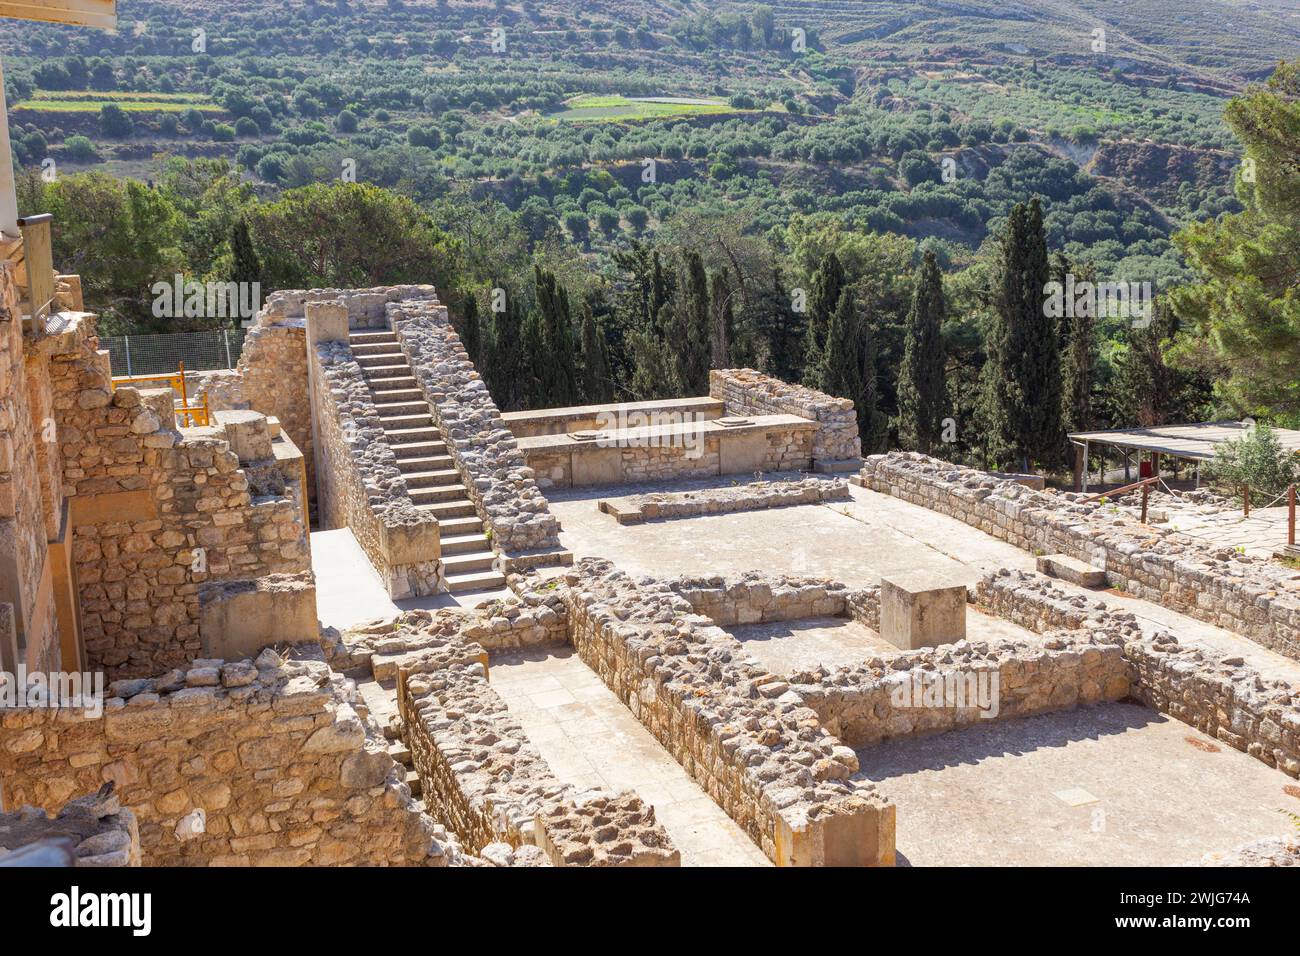 Palais de Minos, site archéologique de l'âge de bronze de Knossos, Héraklion, Crète, Grèce. Banque D'Images